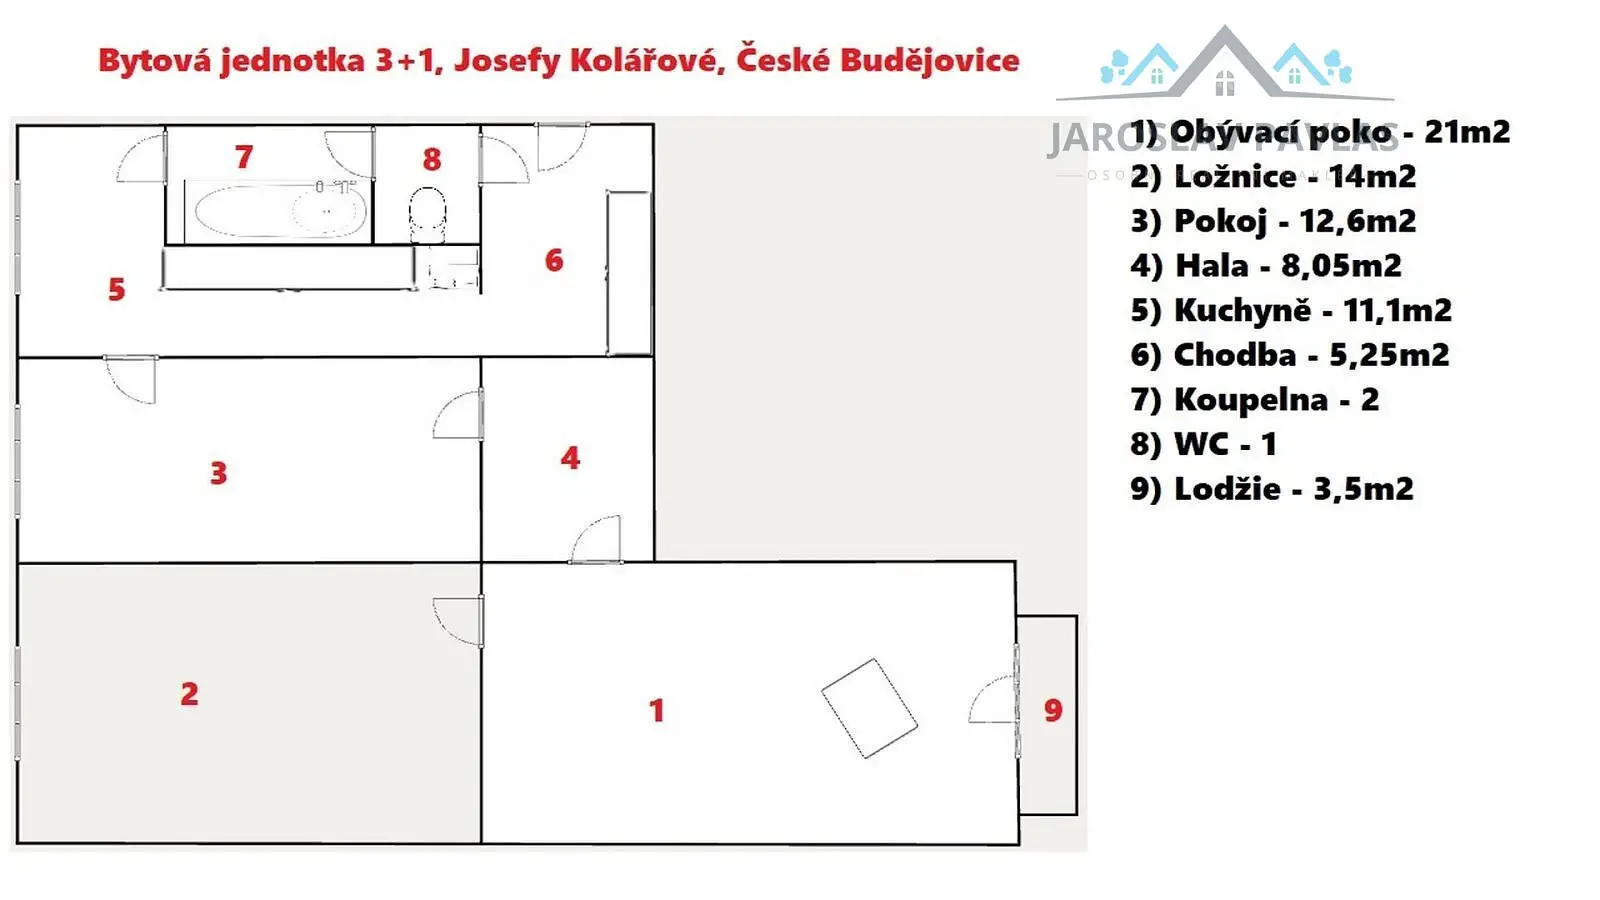 Josefy Kolářové, České Budějovice - České Budějovice 2